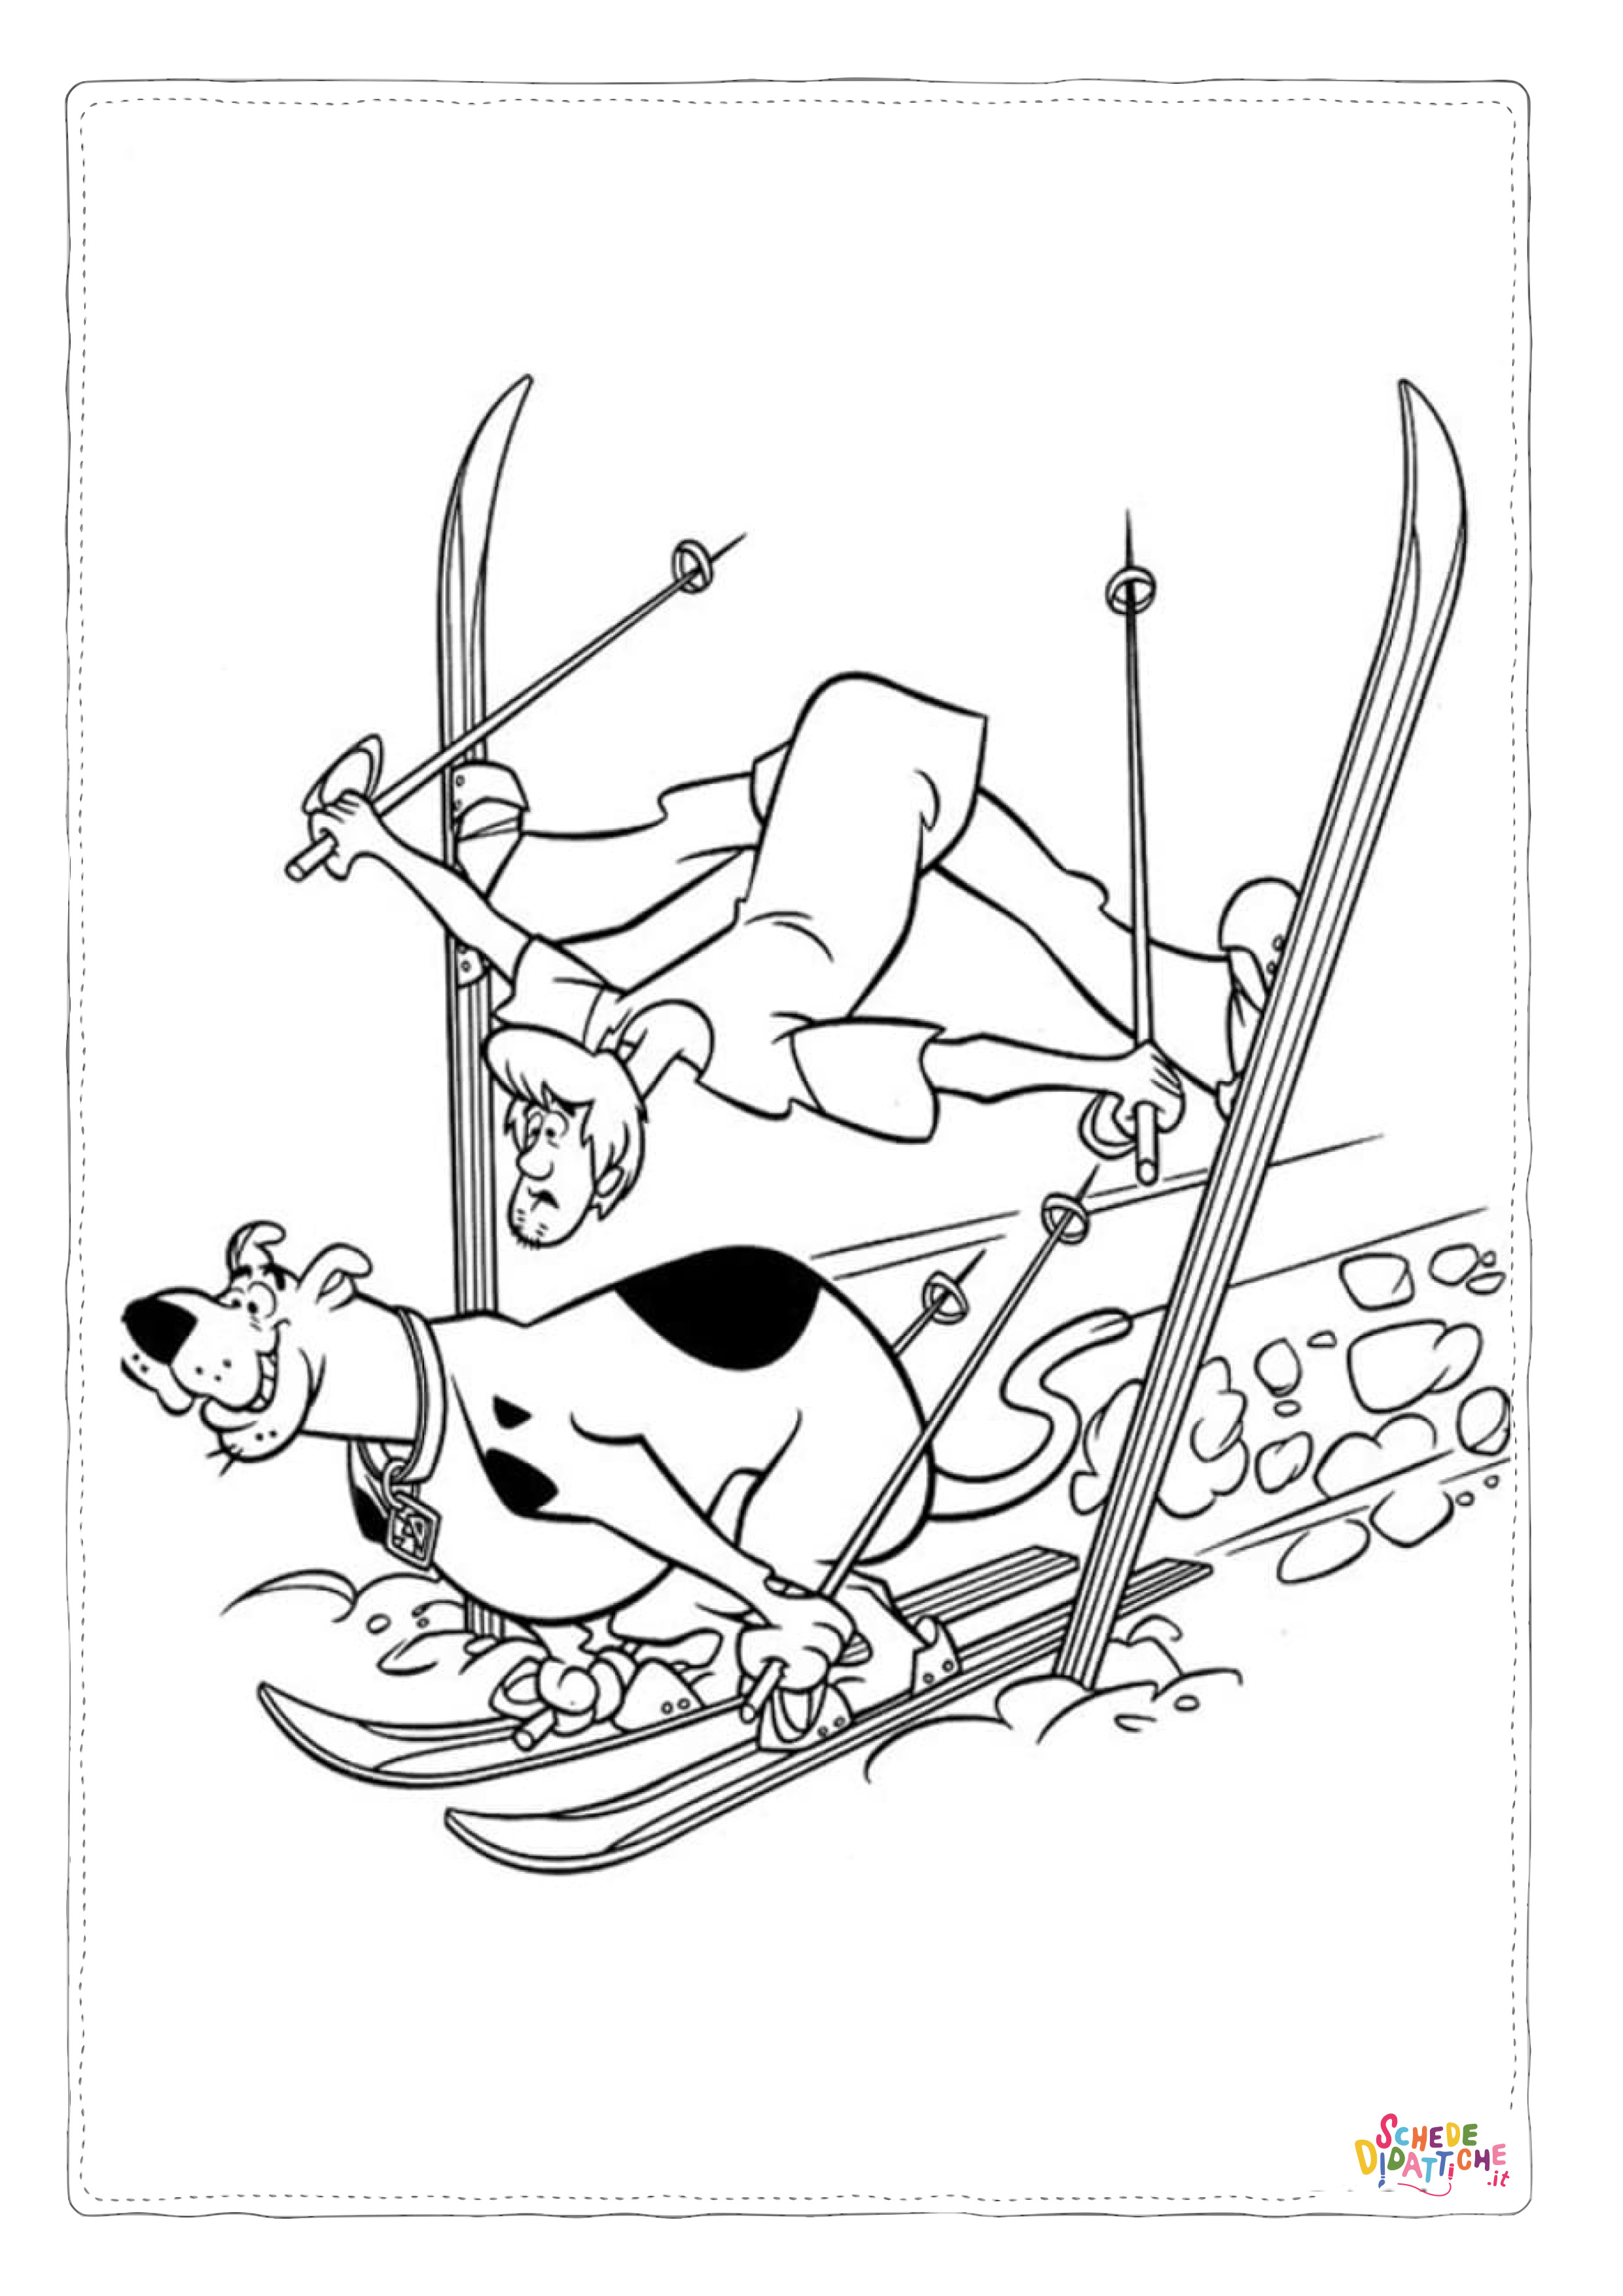 Disegno di Scooby Doo da stampare e colorare 134